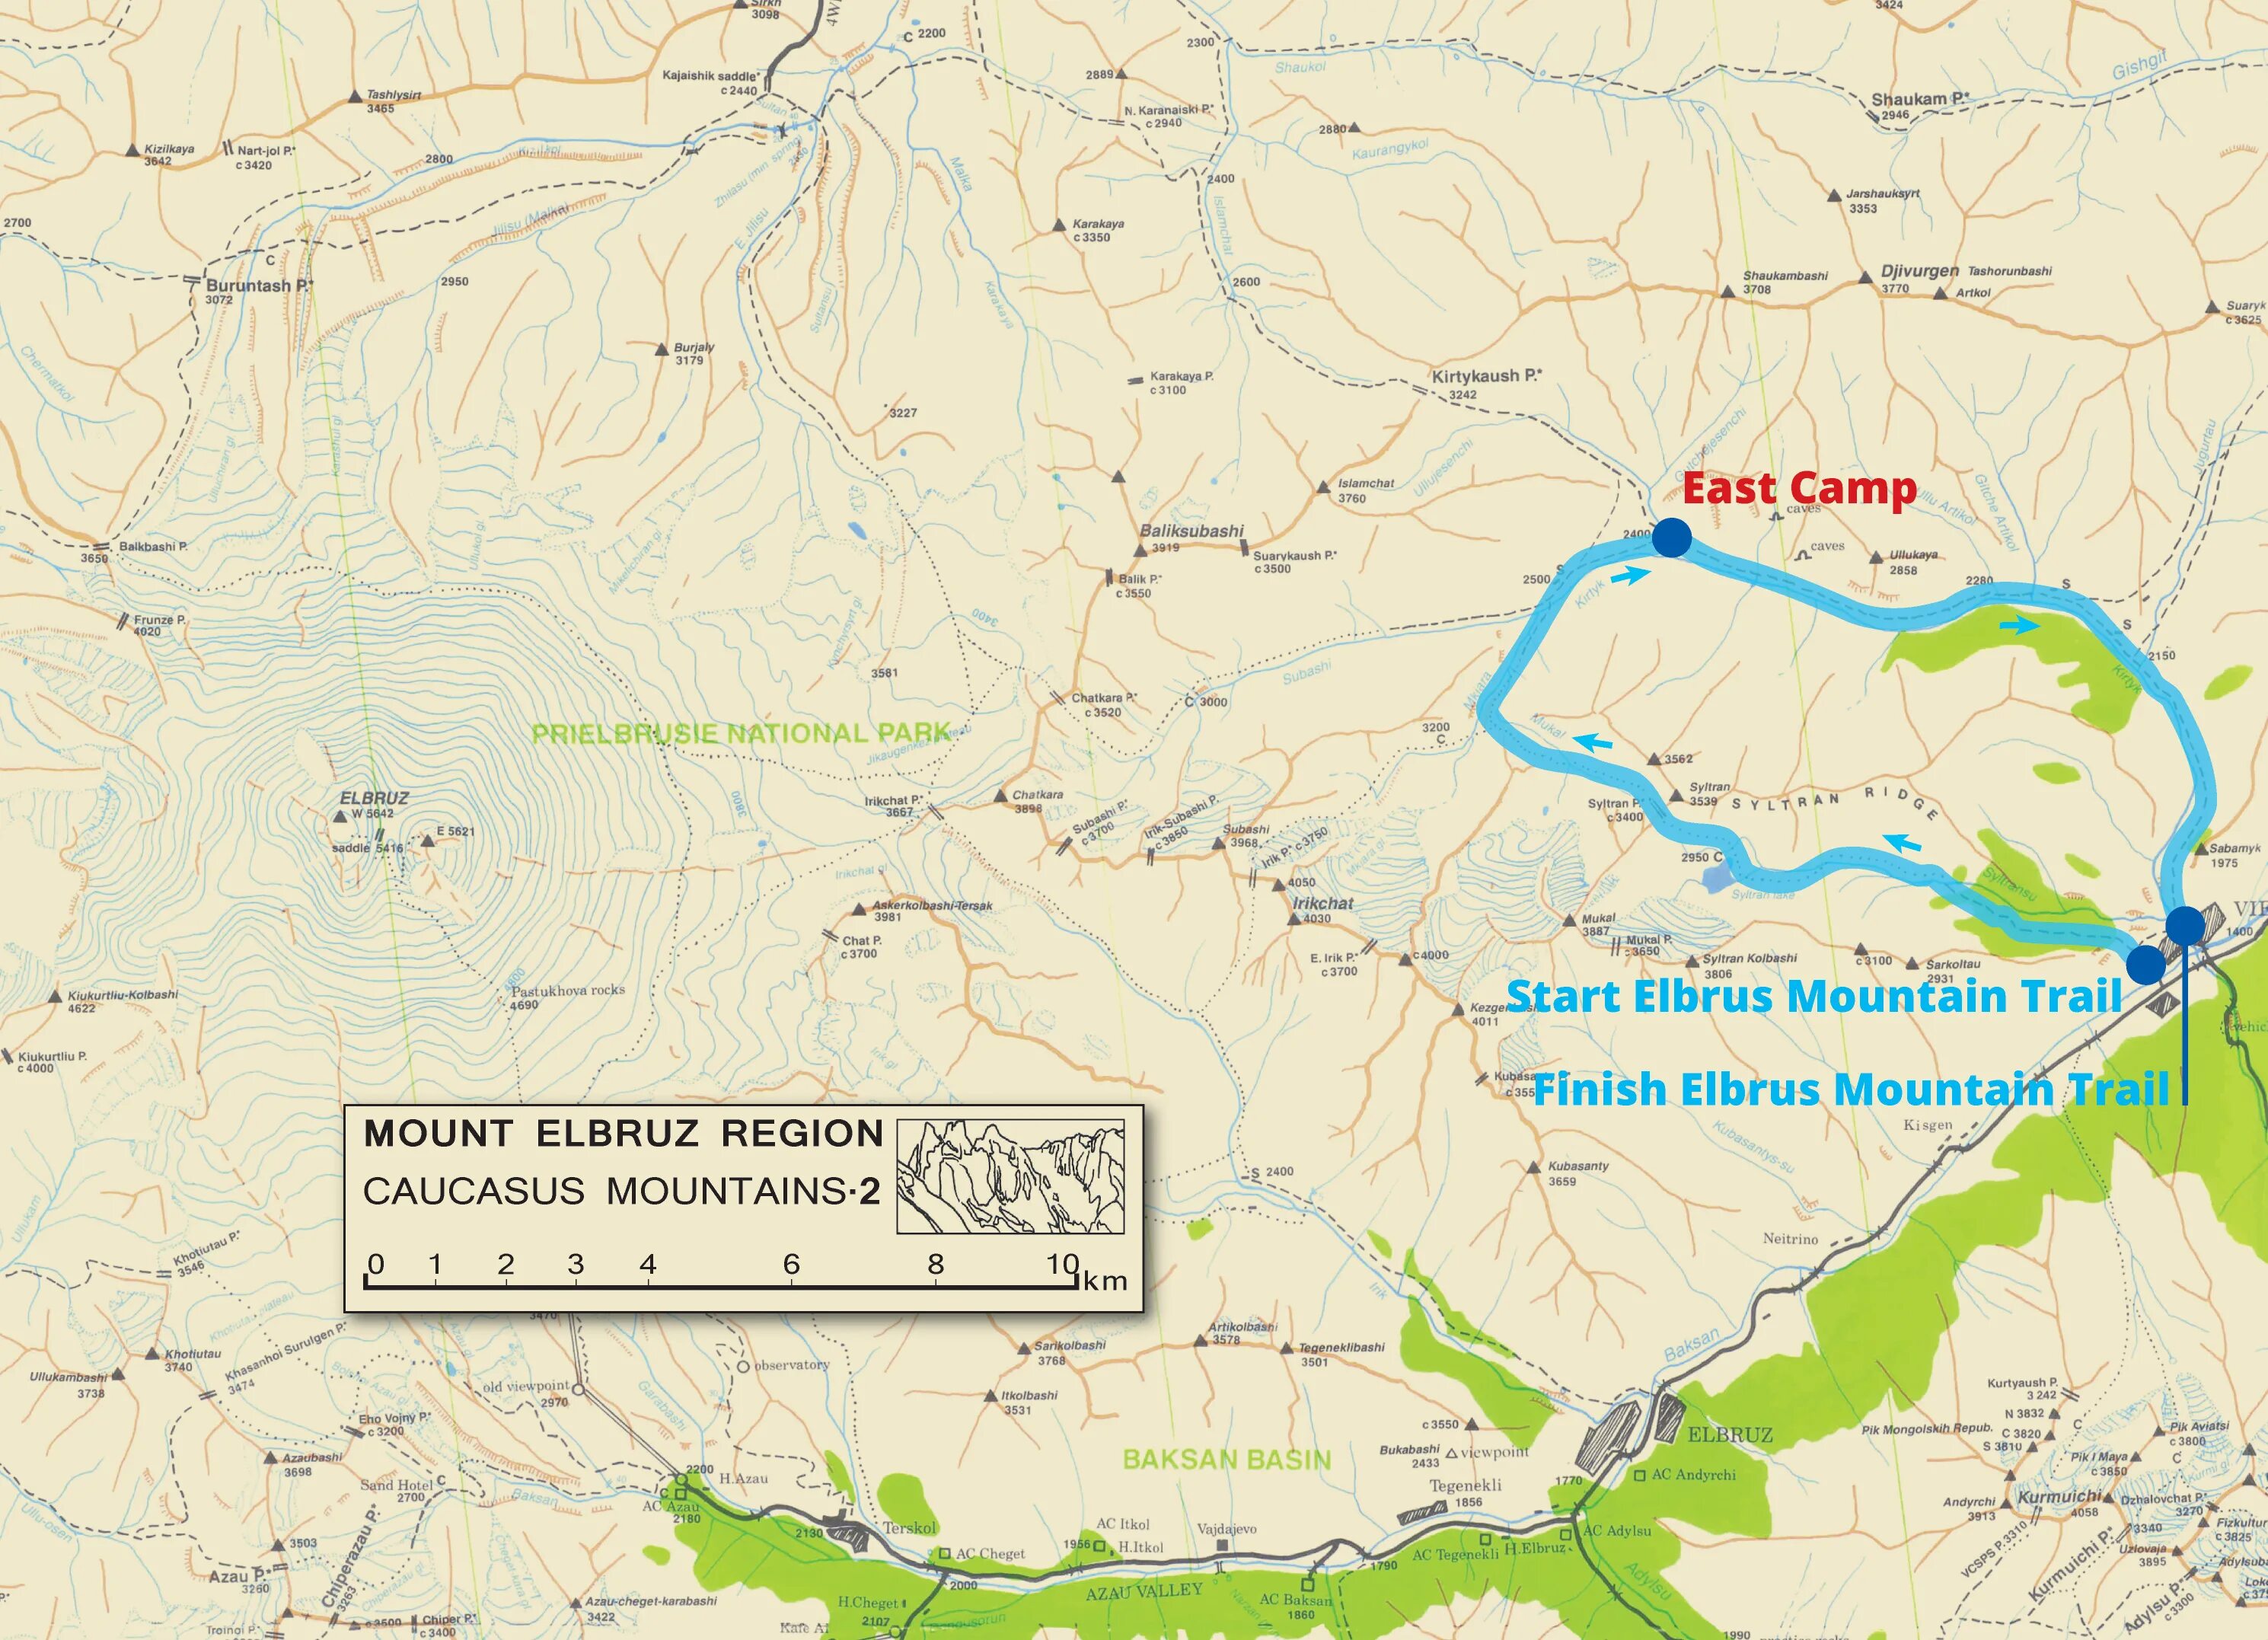 Где находится гора эльбрус на карте россии. Архыз Домбай Эльбрус на карте. Архыз и Эльбрус на карте. Национальный парк Приэльбрусье карта. Приэльбрусье карта схема.